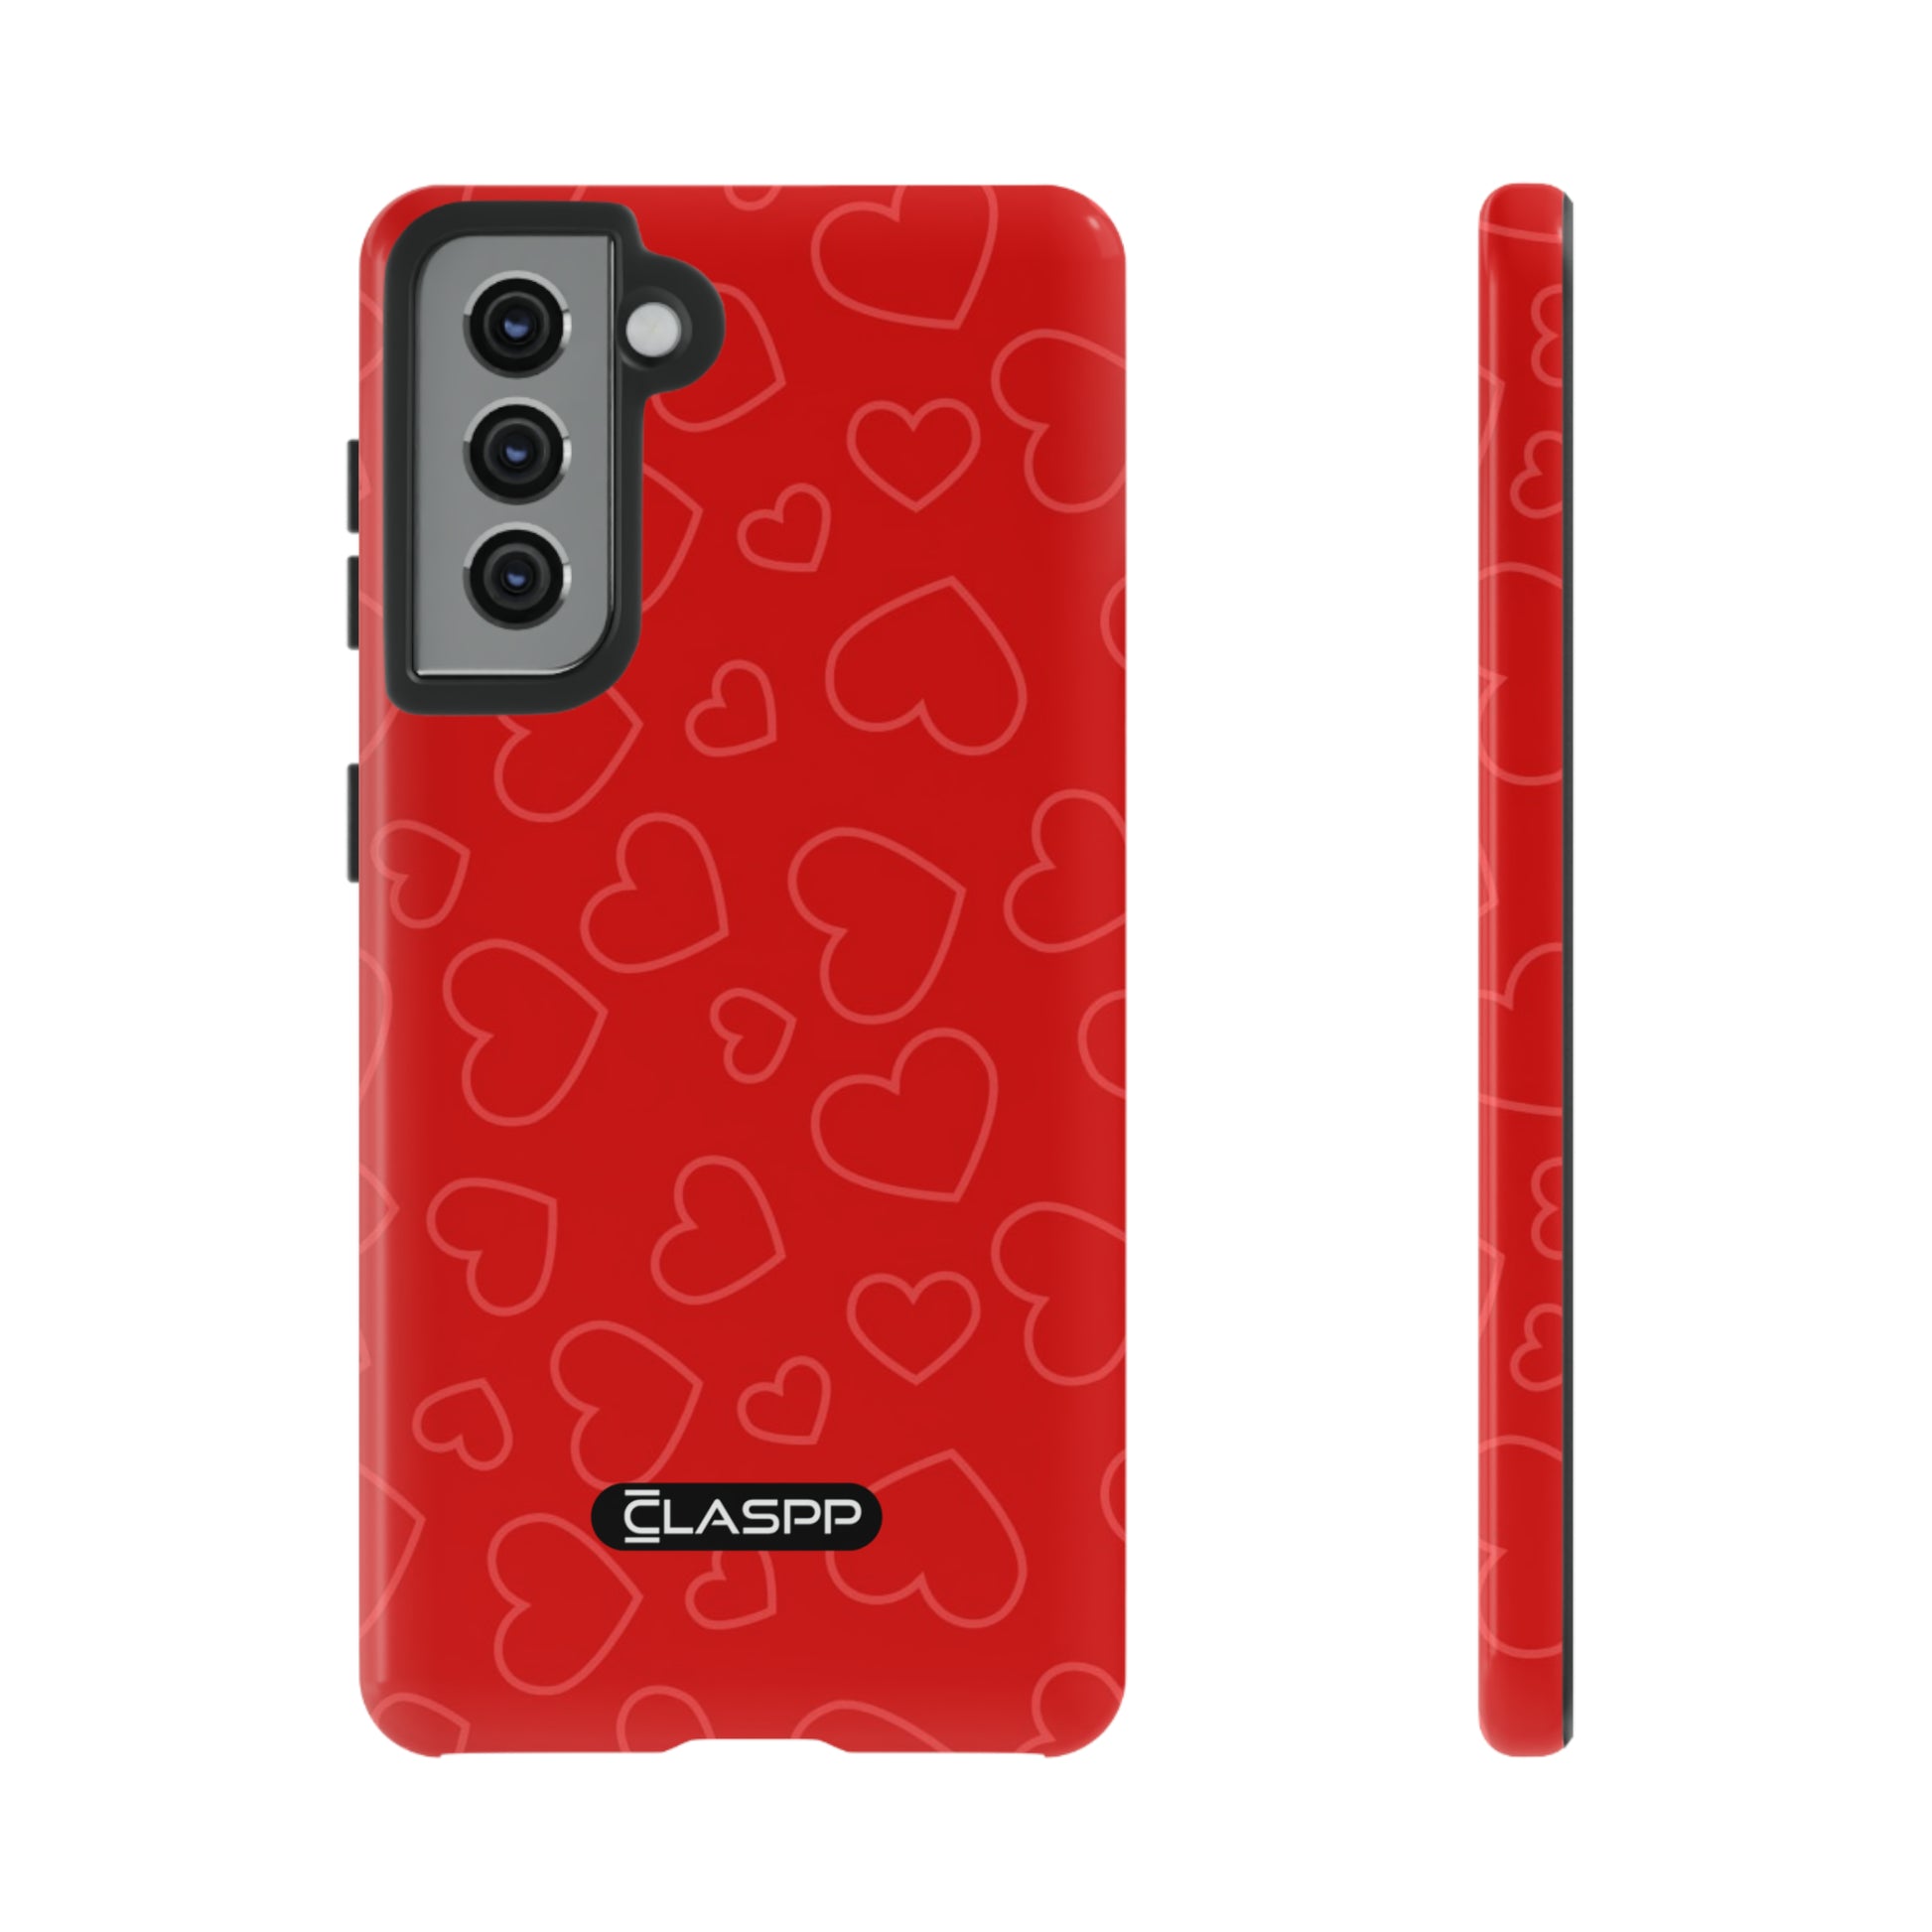 Samsung Galaxy S21 Amora Valentine's Day phone case